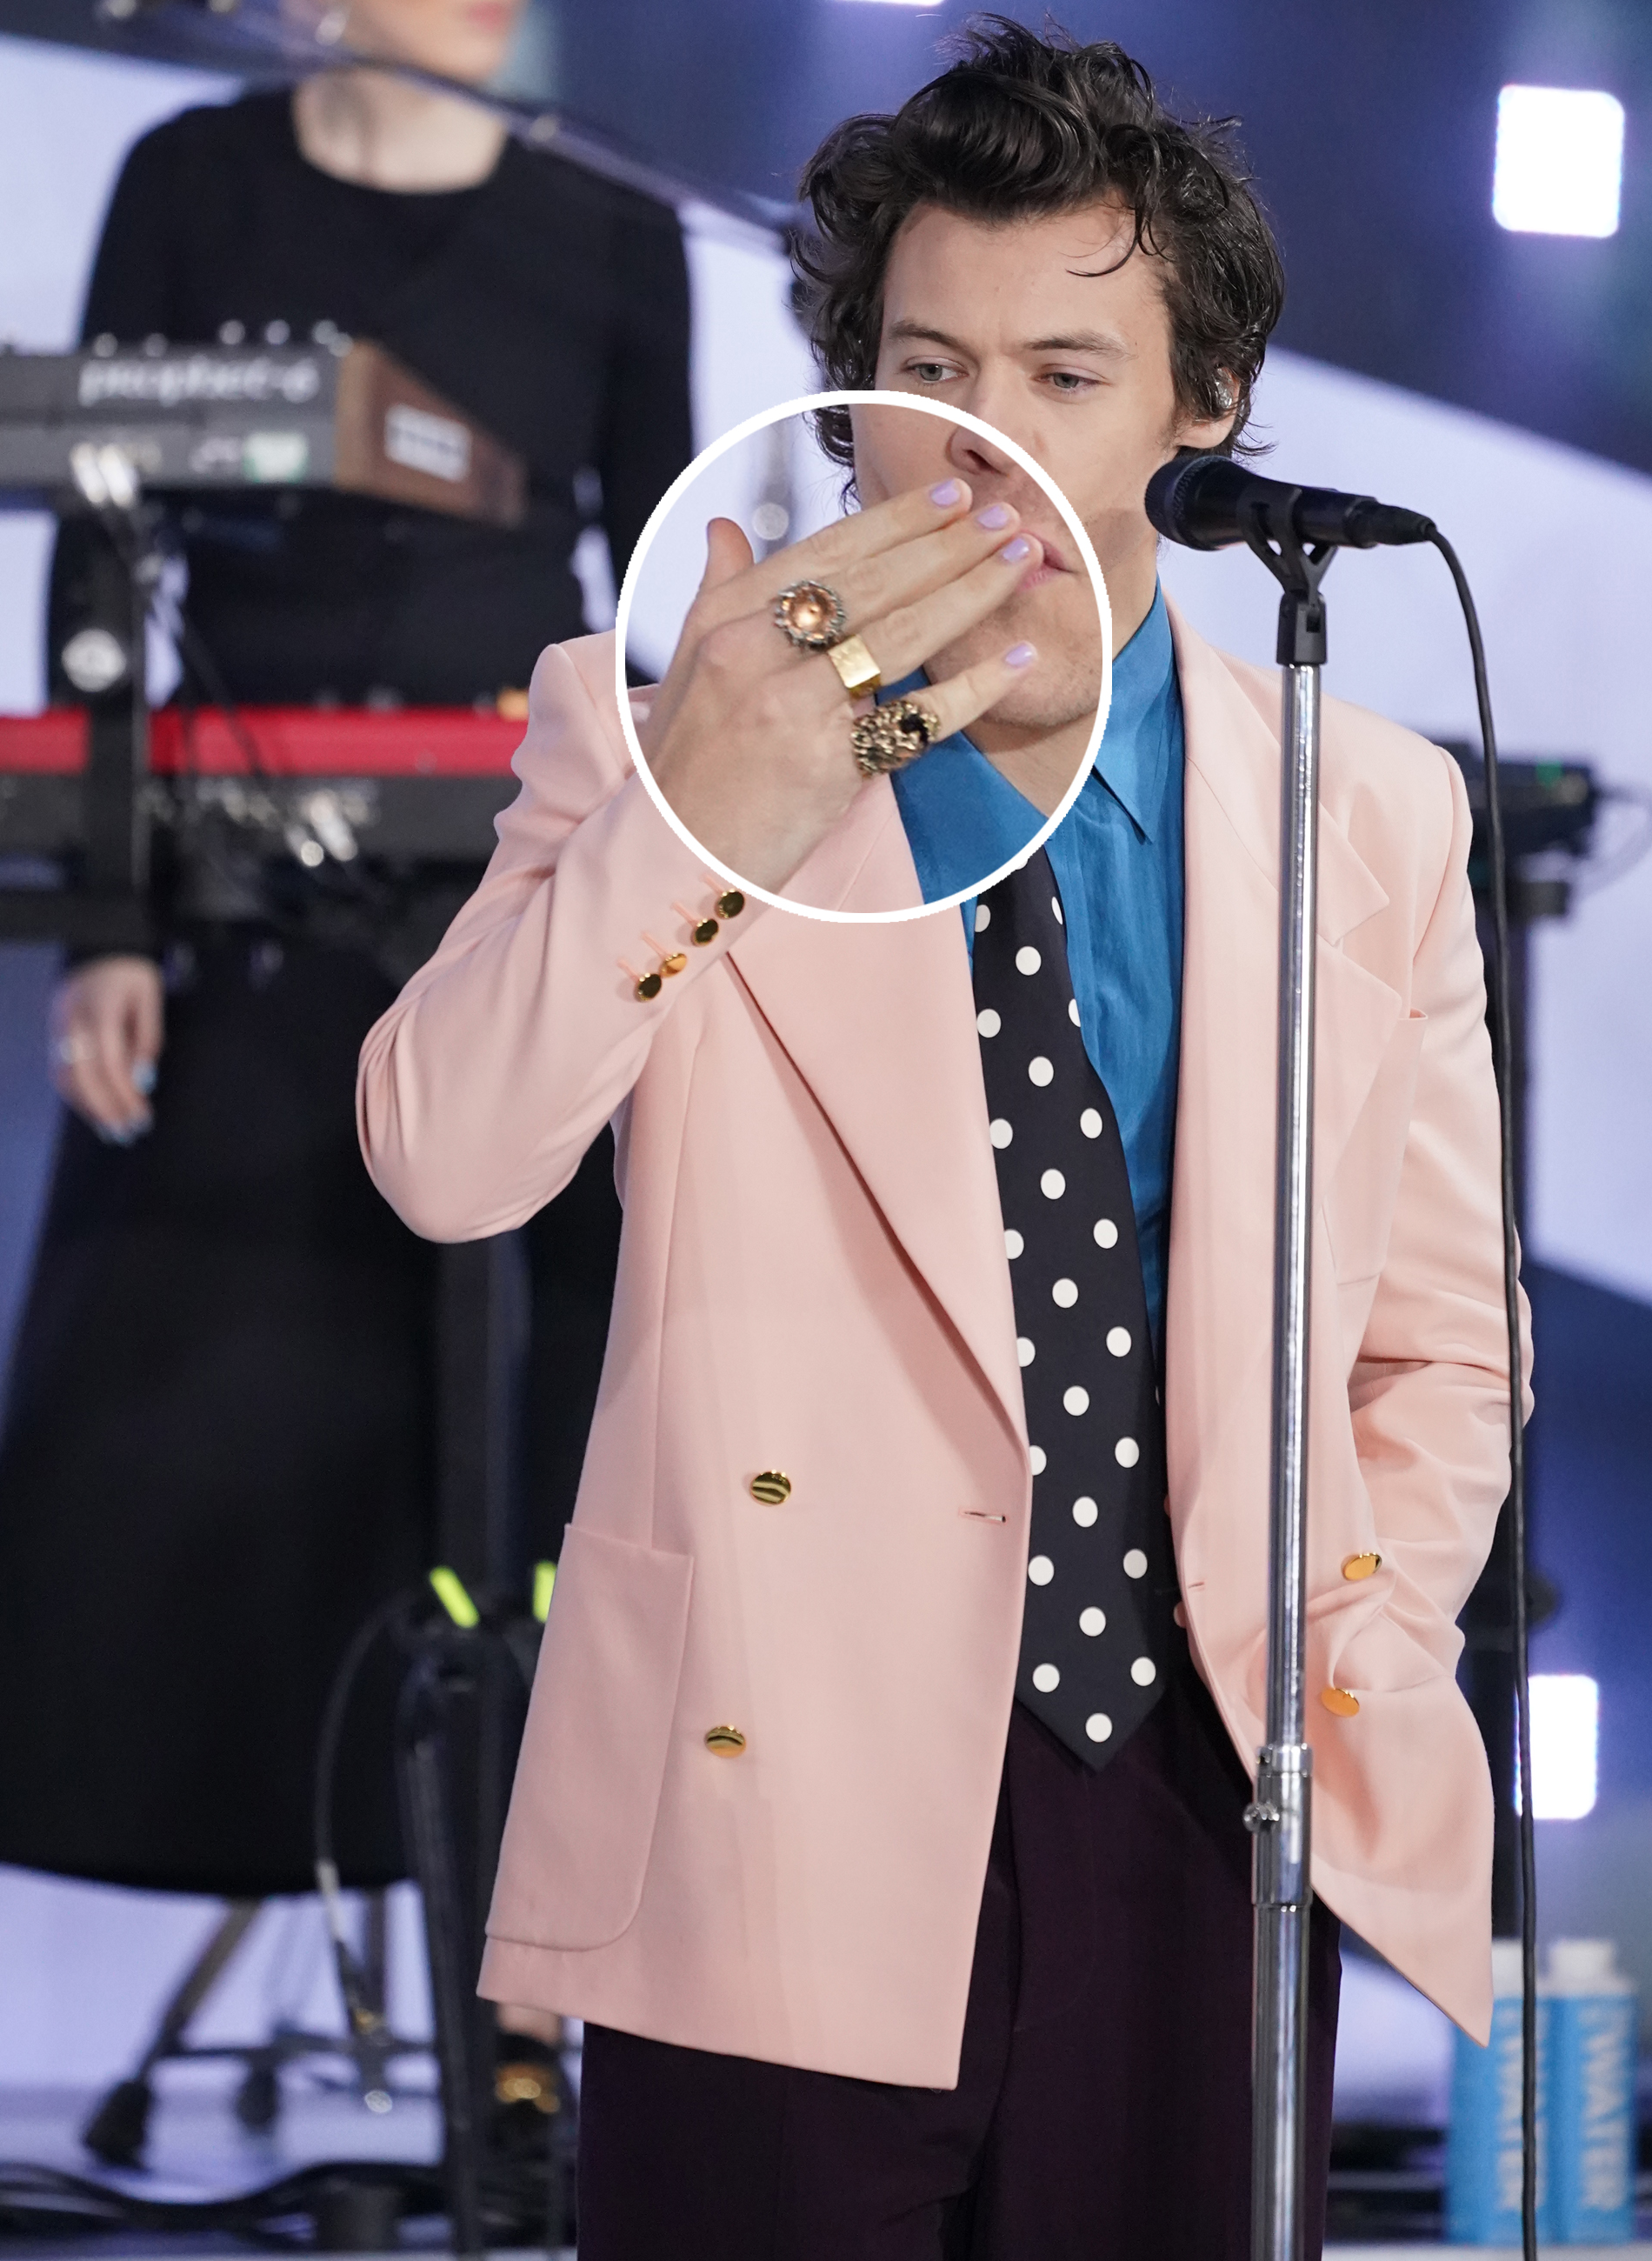 Harry Styles usando blazer rosa com gravata preta de poá, camisa azul e mix de anéis nos dedos. Ele está com a mão na boca mandando beijo para o público.